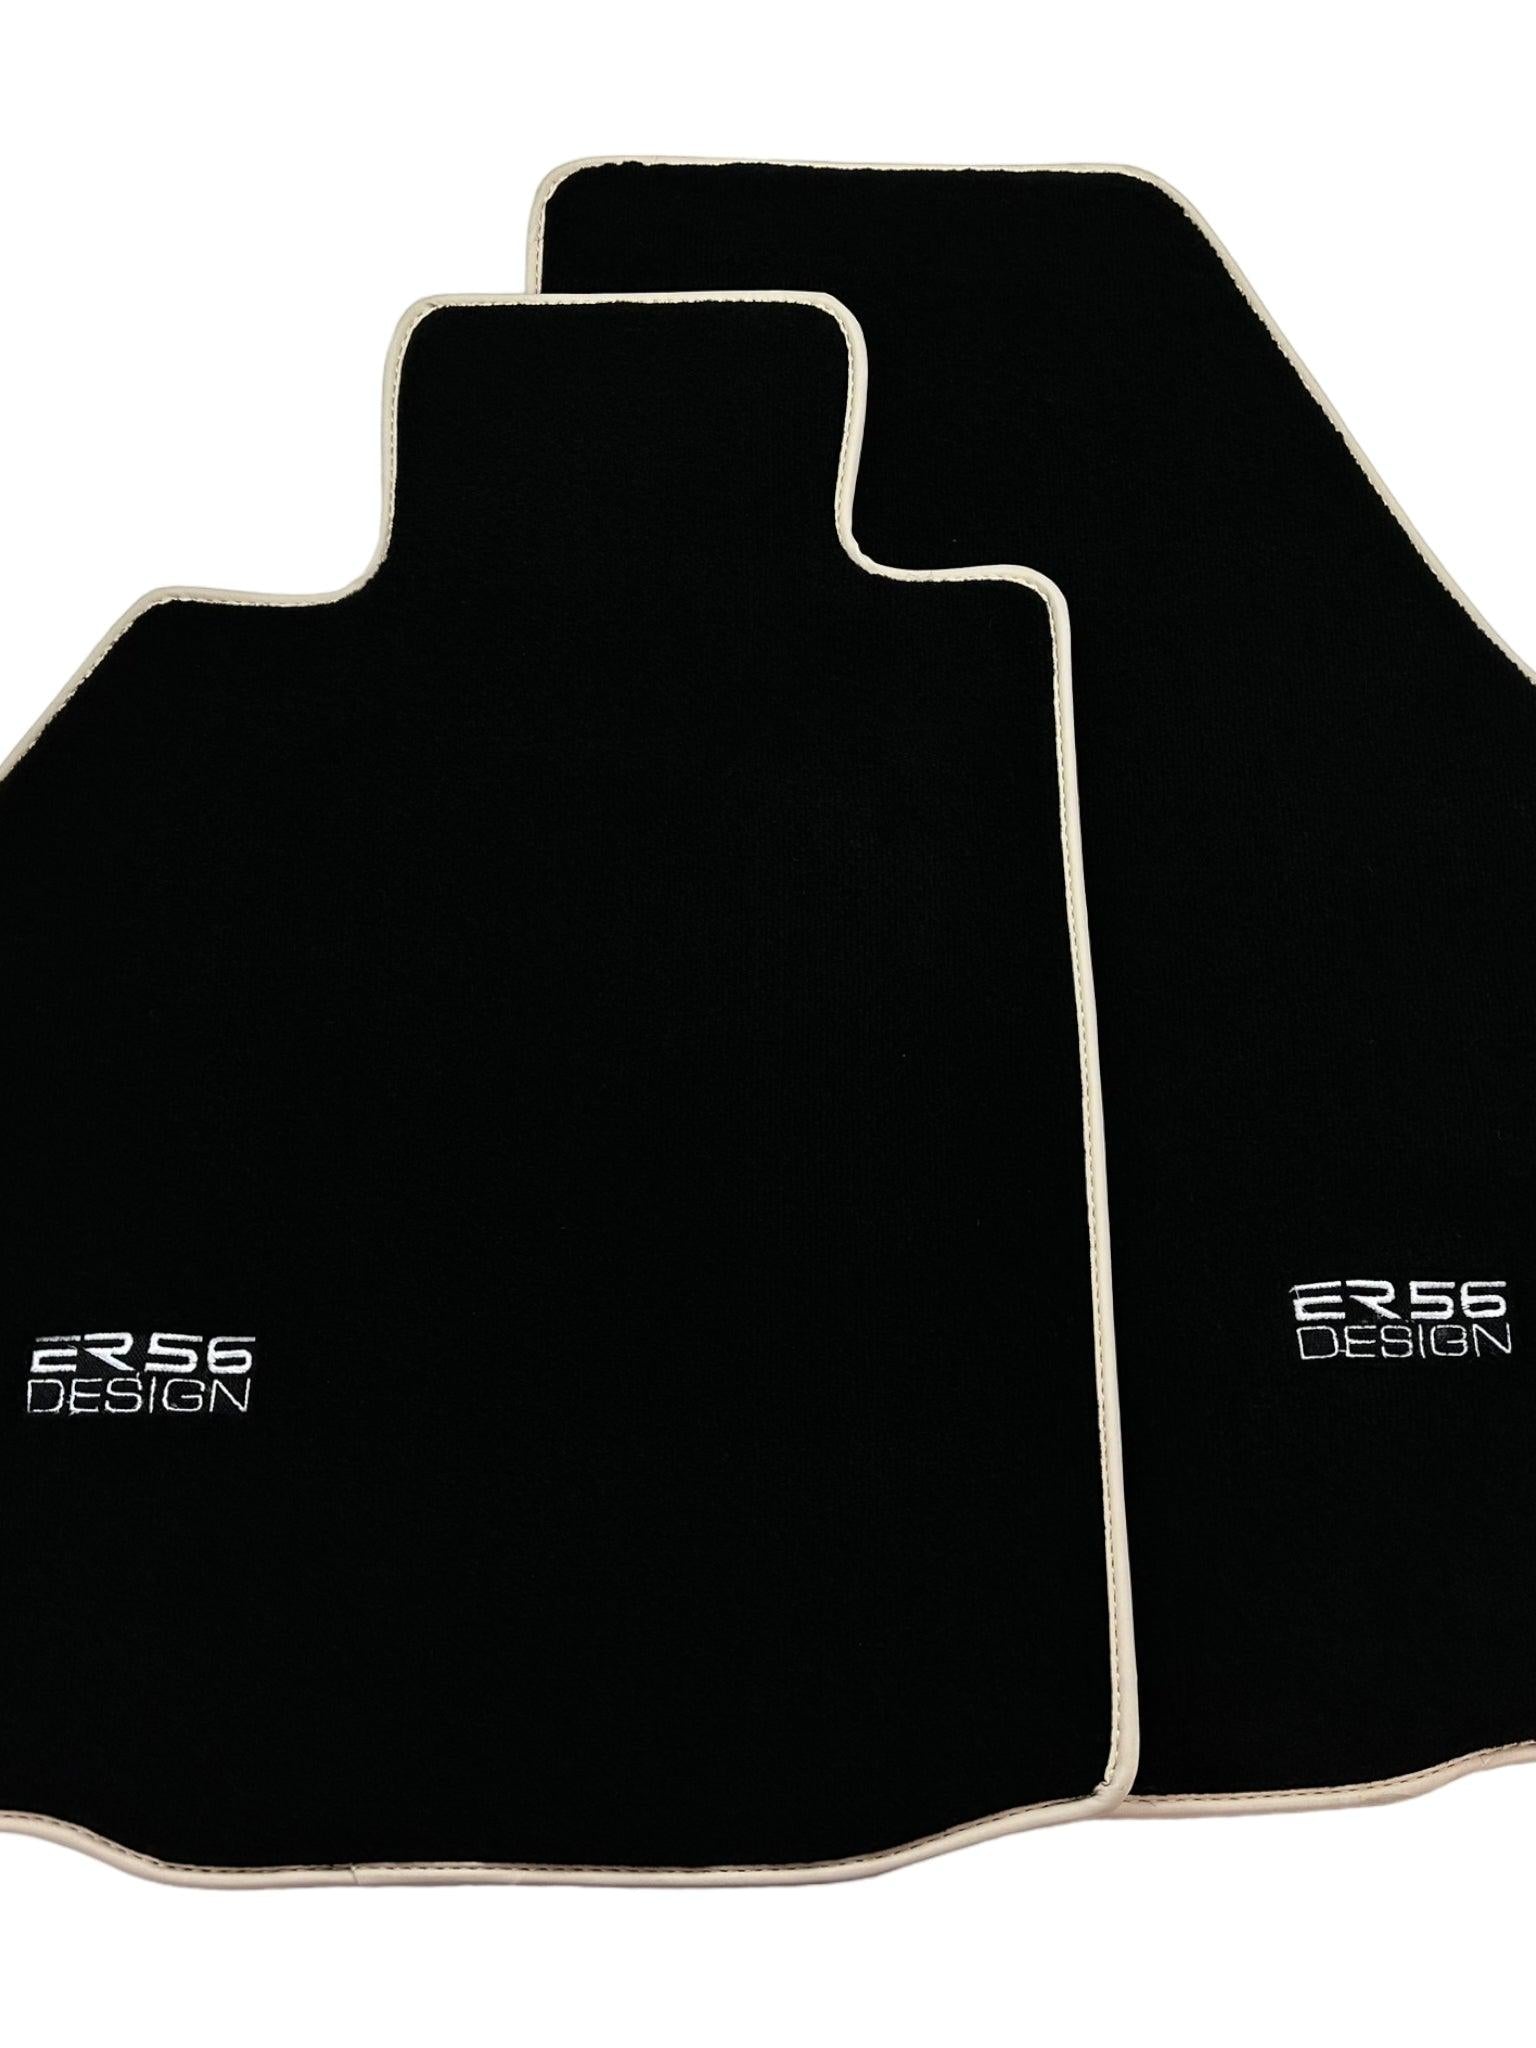 Black Floor Mats for Porsche 911 - 997 (2005-2011) ER56 Design